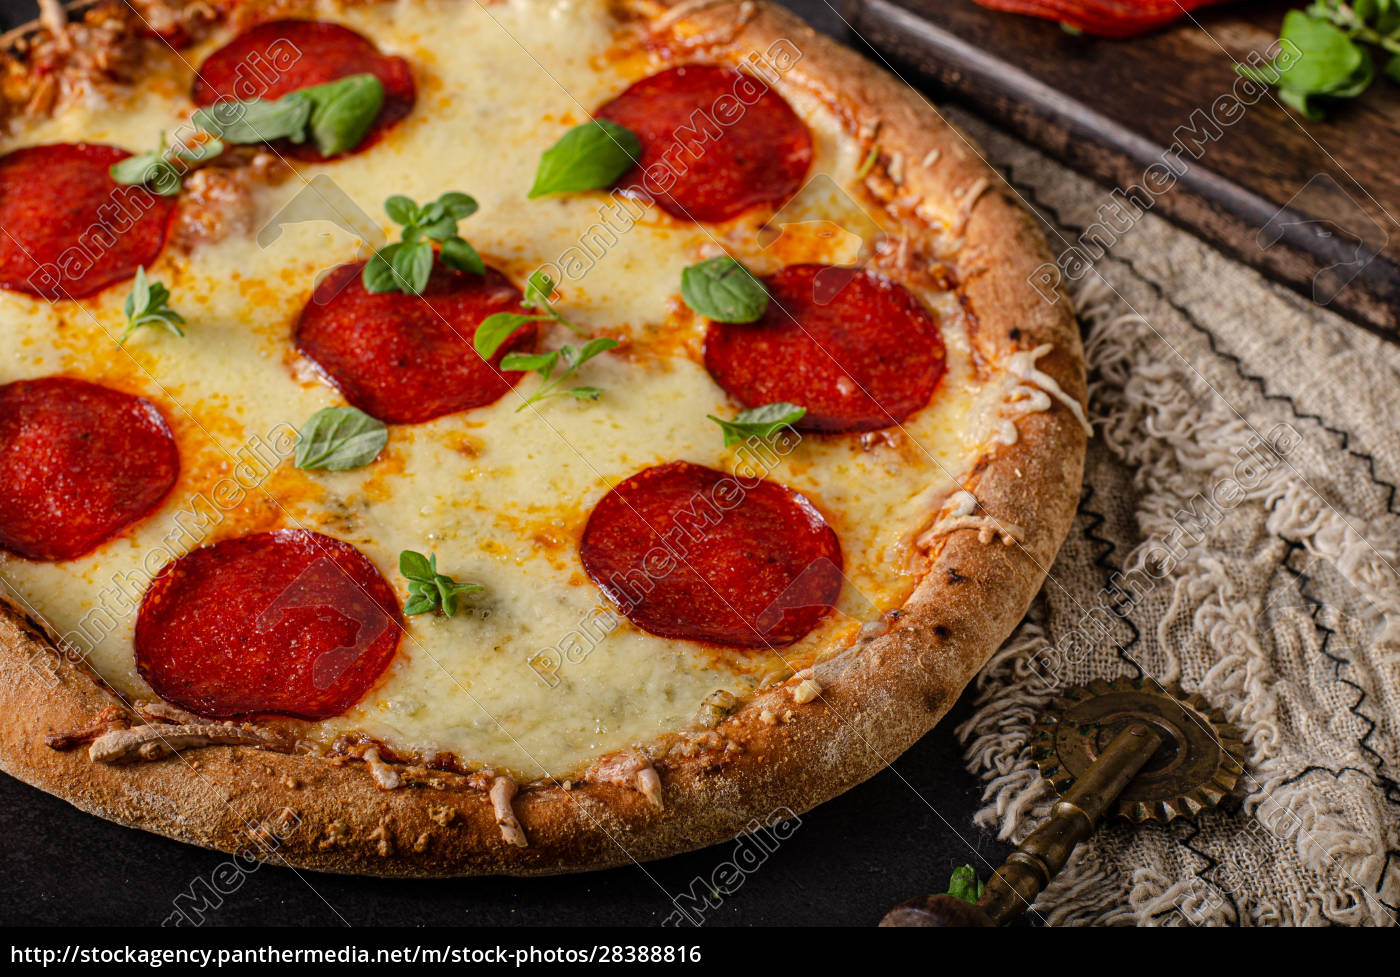 Hausgemachte Salami-Pizza mit Käseecken - Lizenzfreies Foto - #28388816 ...